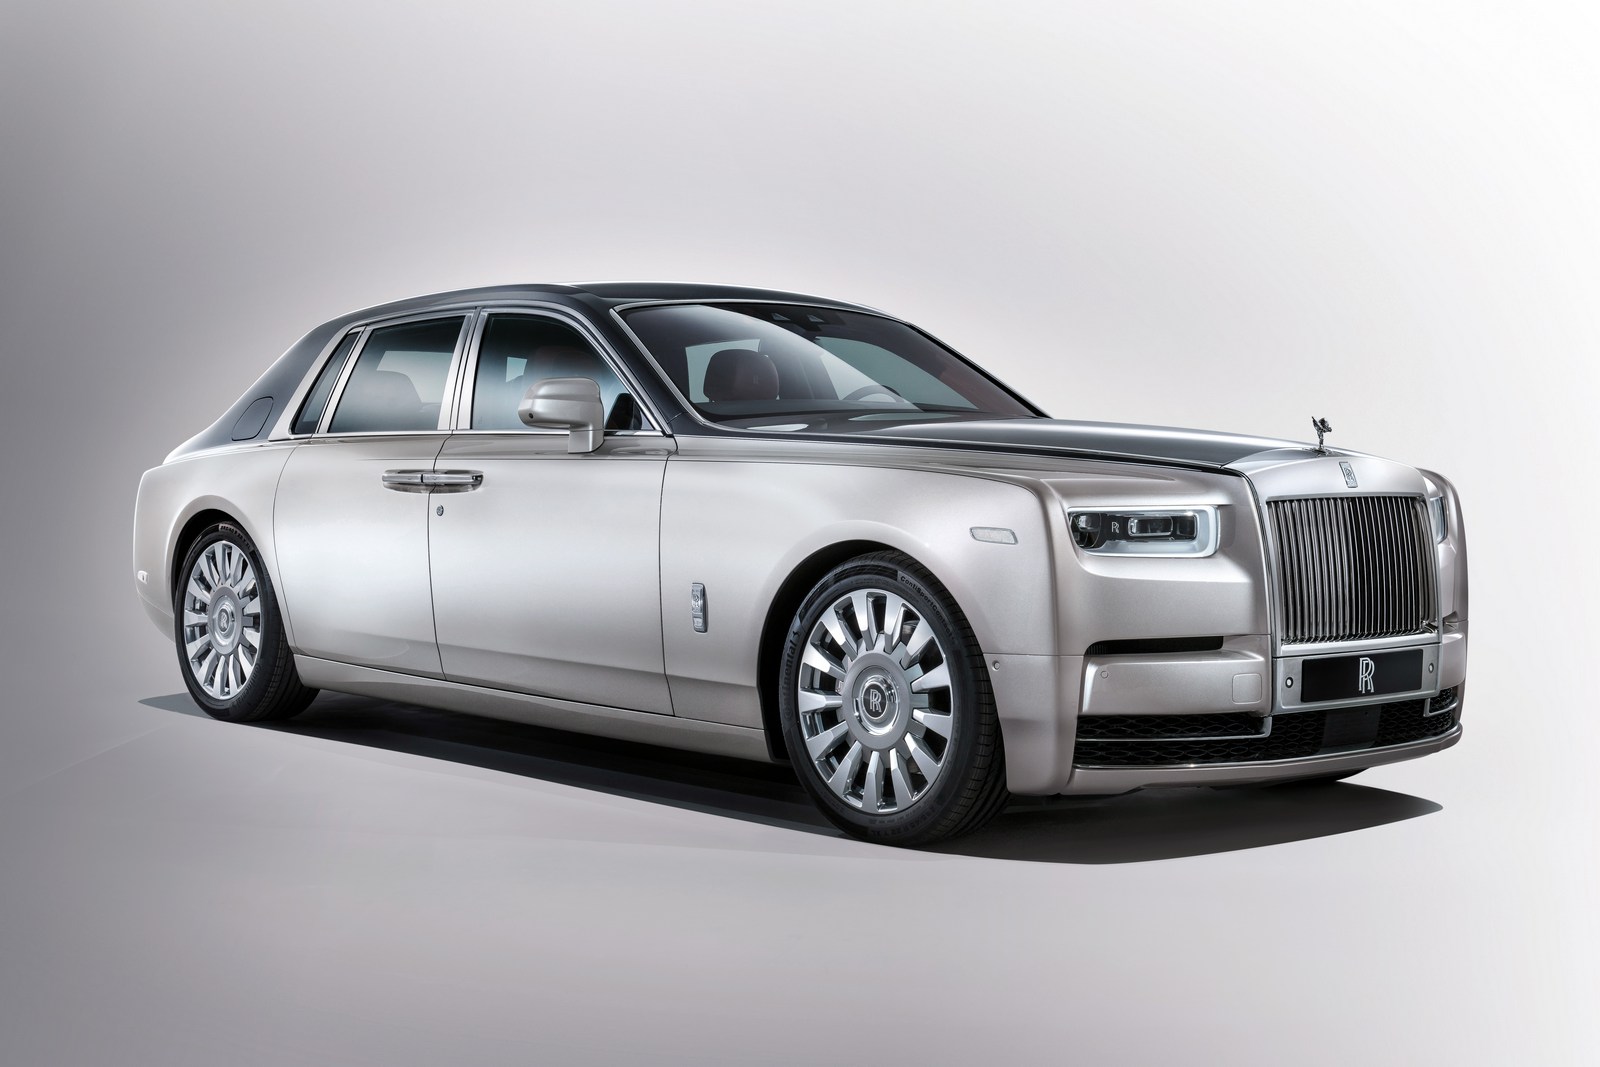 Rolls-Royce Phantom siêu sang hoàn toàn mới chính thức ra mắt